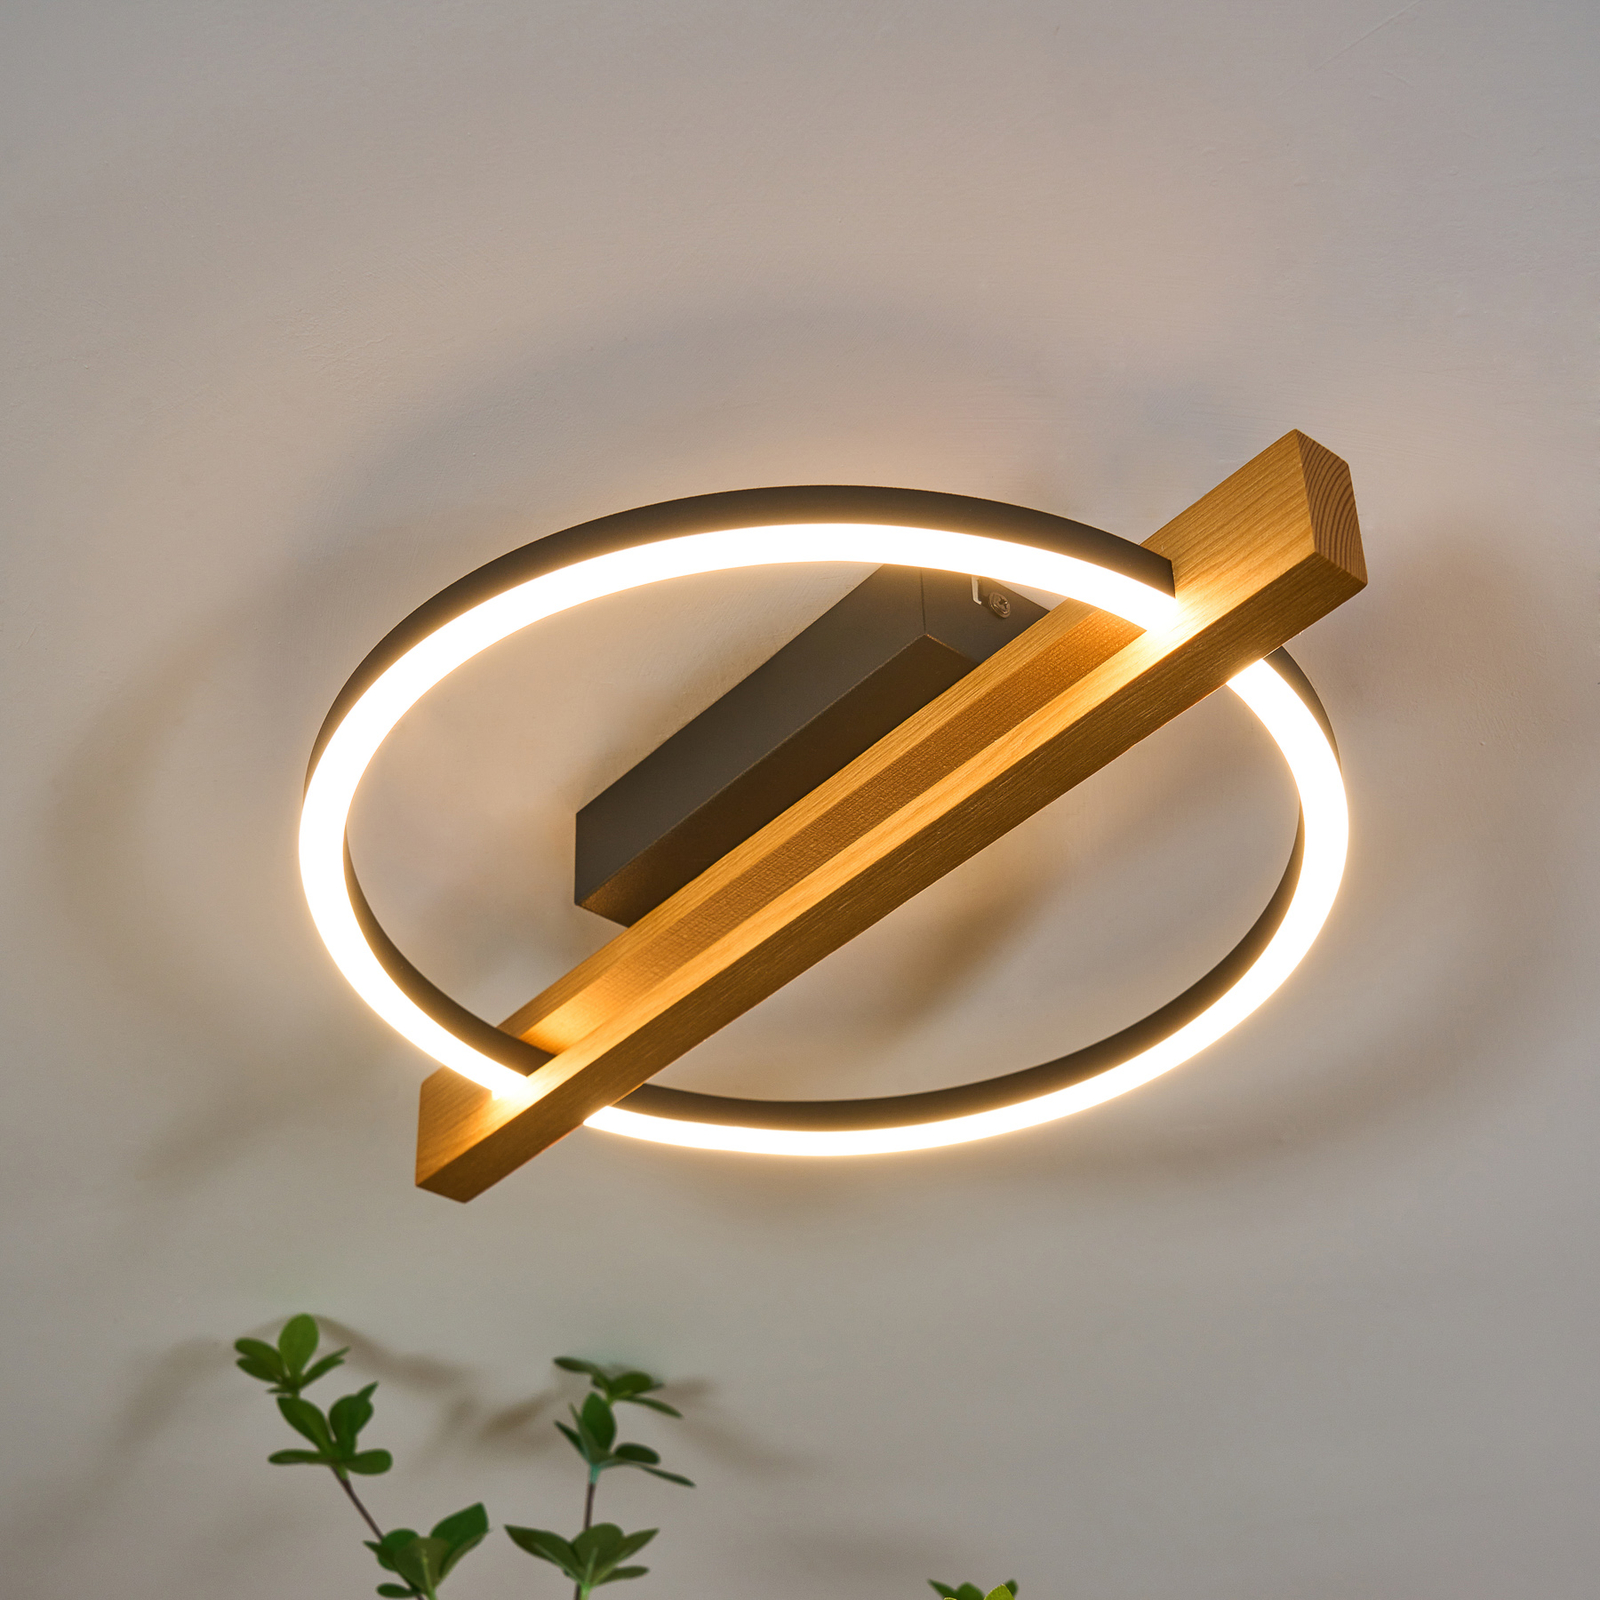 LED ceiling light Tovak, pine, length 39 cm, wood